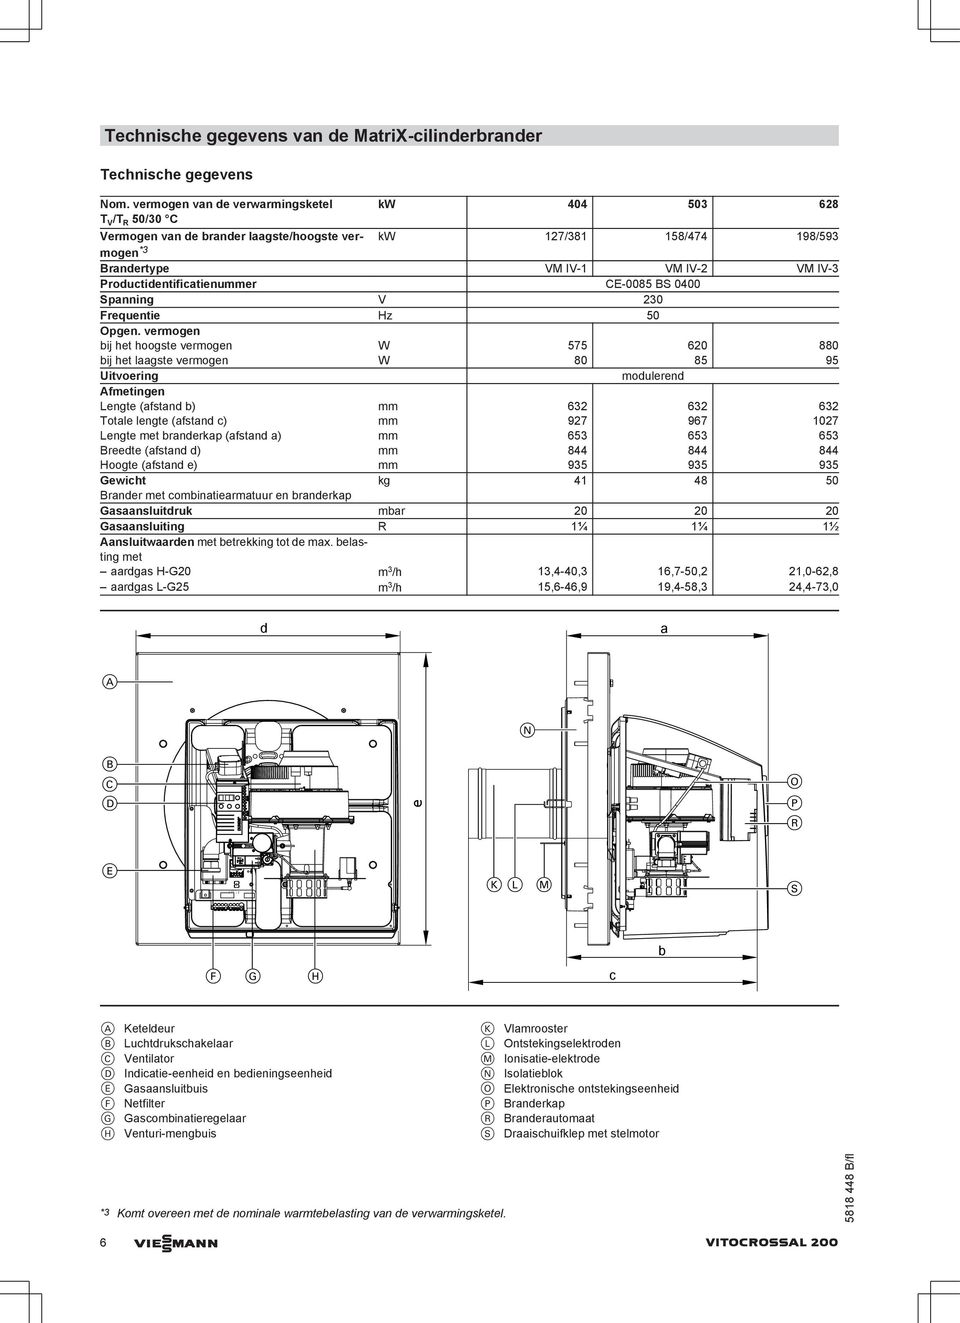 Productidentificatienummer CE-0085 BS 0400 Spanning V 230 Frequentie Hz 50 Opgen.